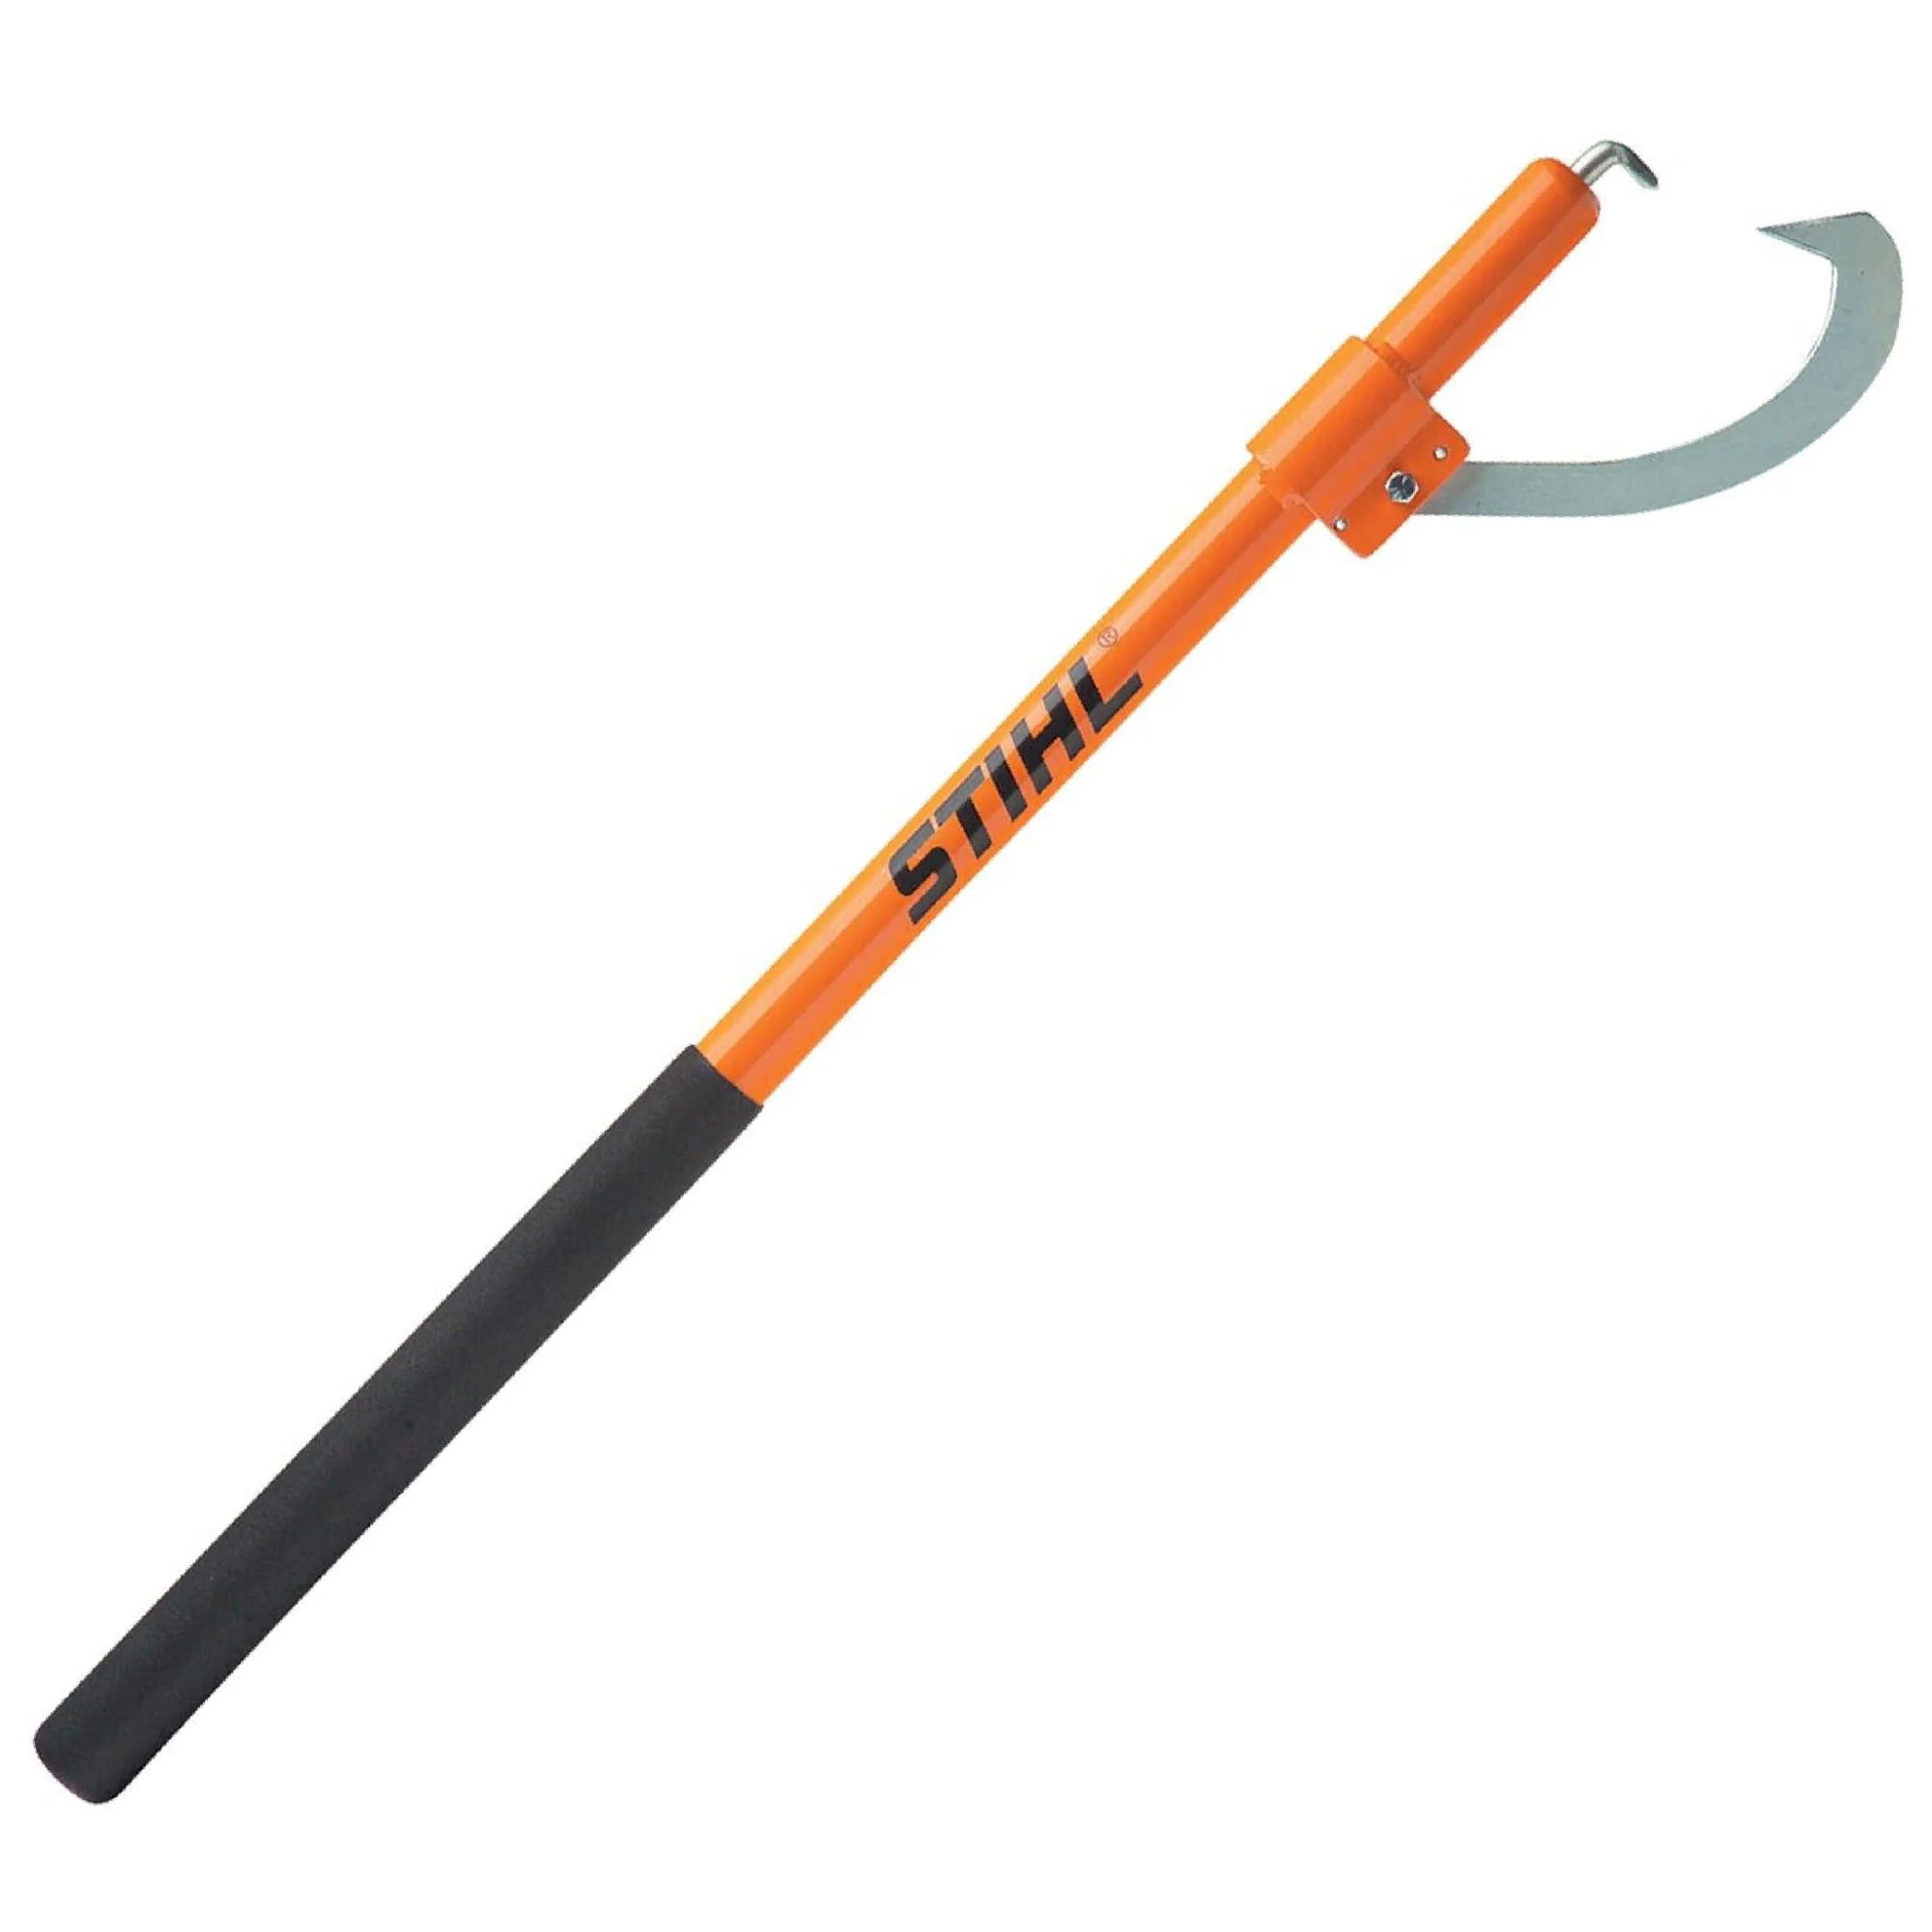 Stihl 60” Orange Cant Hook | 7010 881 2604